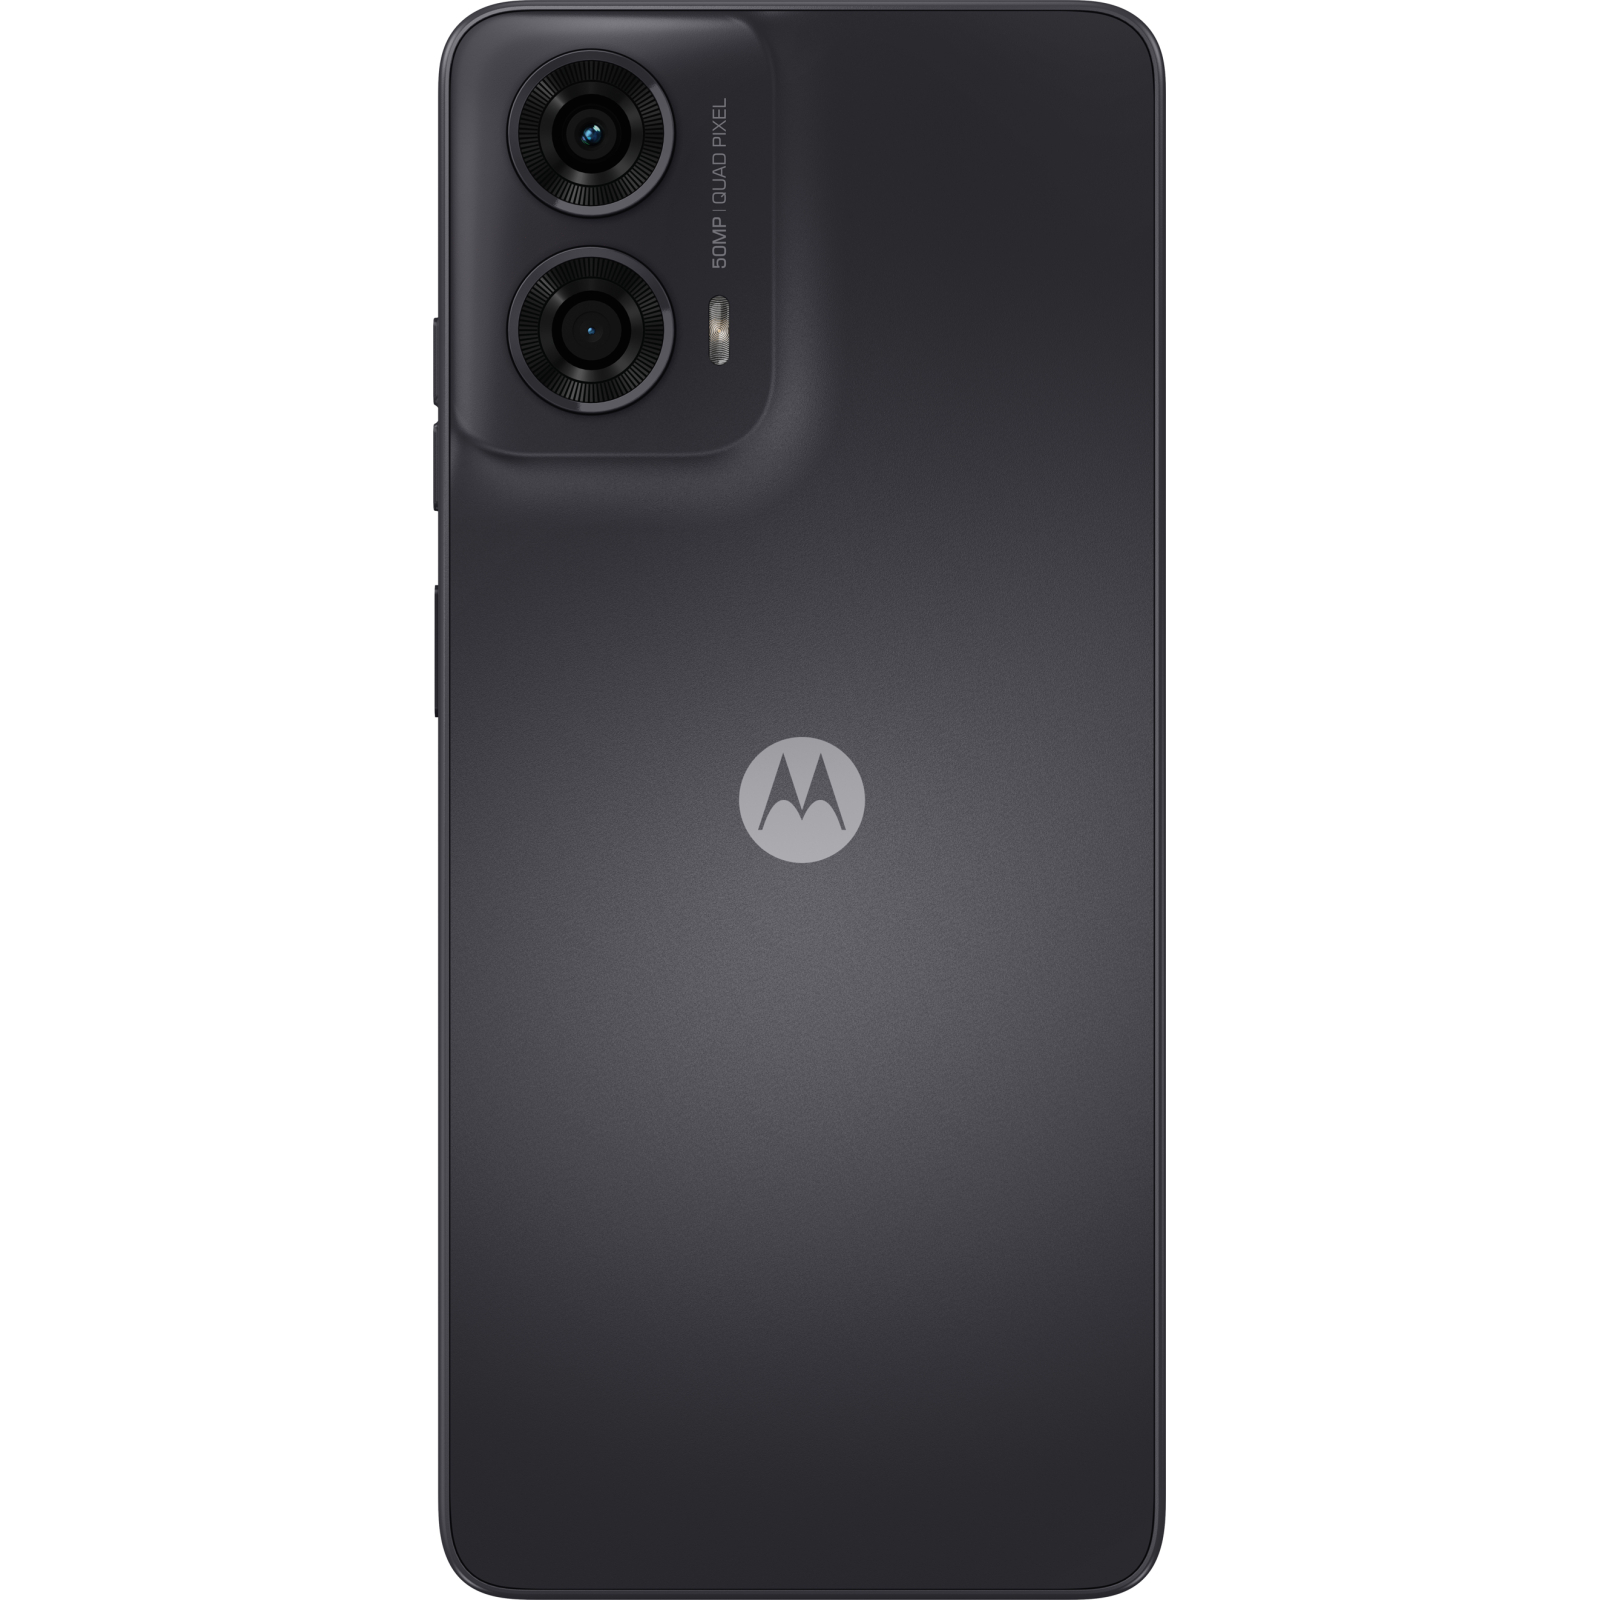 Мобільний телефон Motorola G24 4/128GB Pink Lavender (PB180010RS) зображення 3